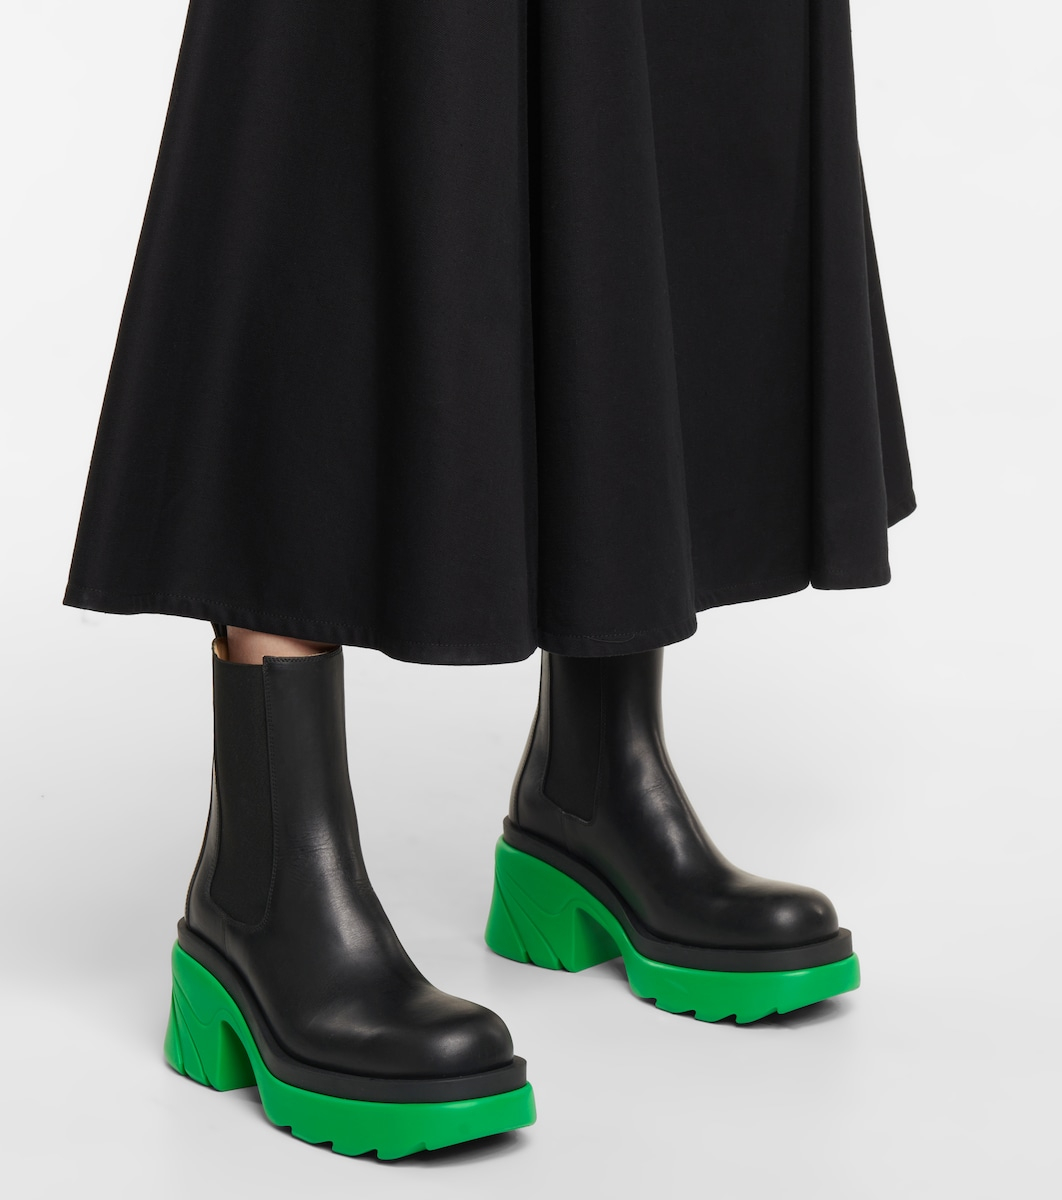 Челси женские сапоги ботинки зимние MIA01 купить по цене 2499 ₽ винтернет-магазине KazanExpress